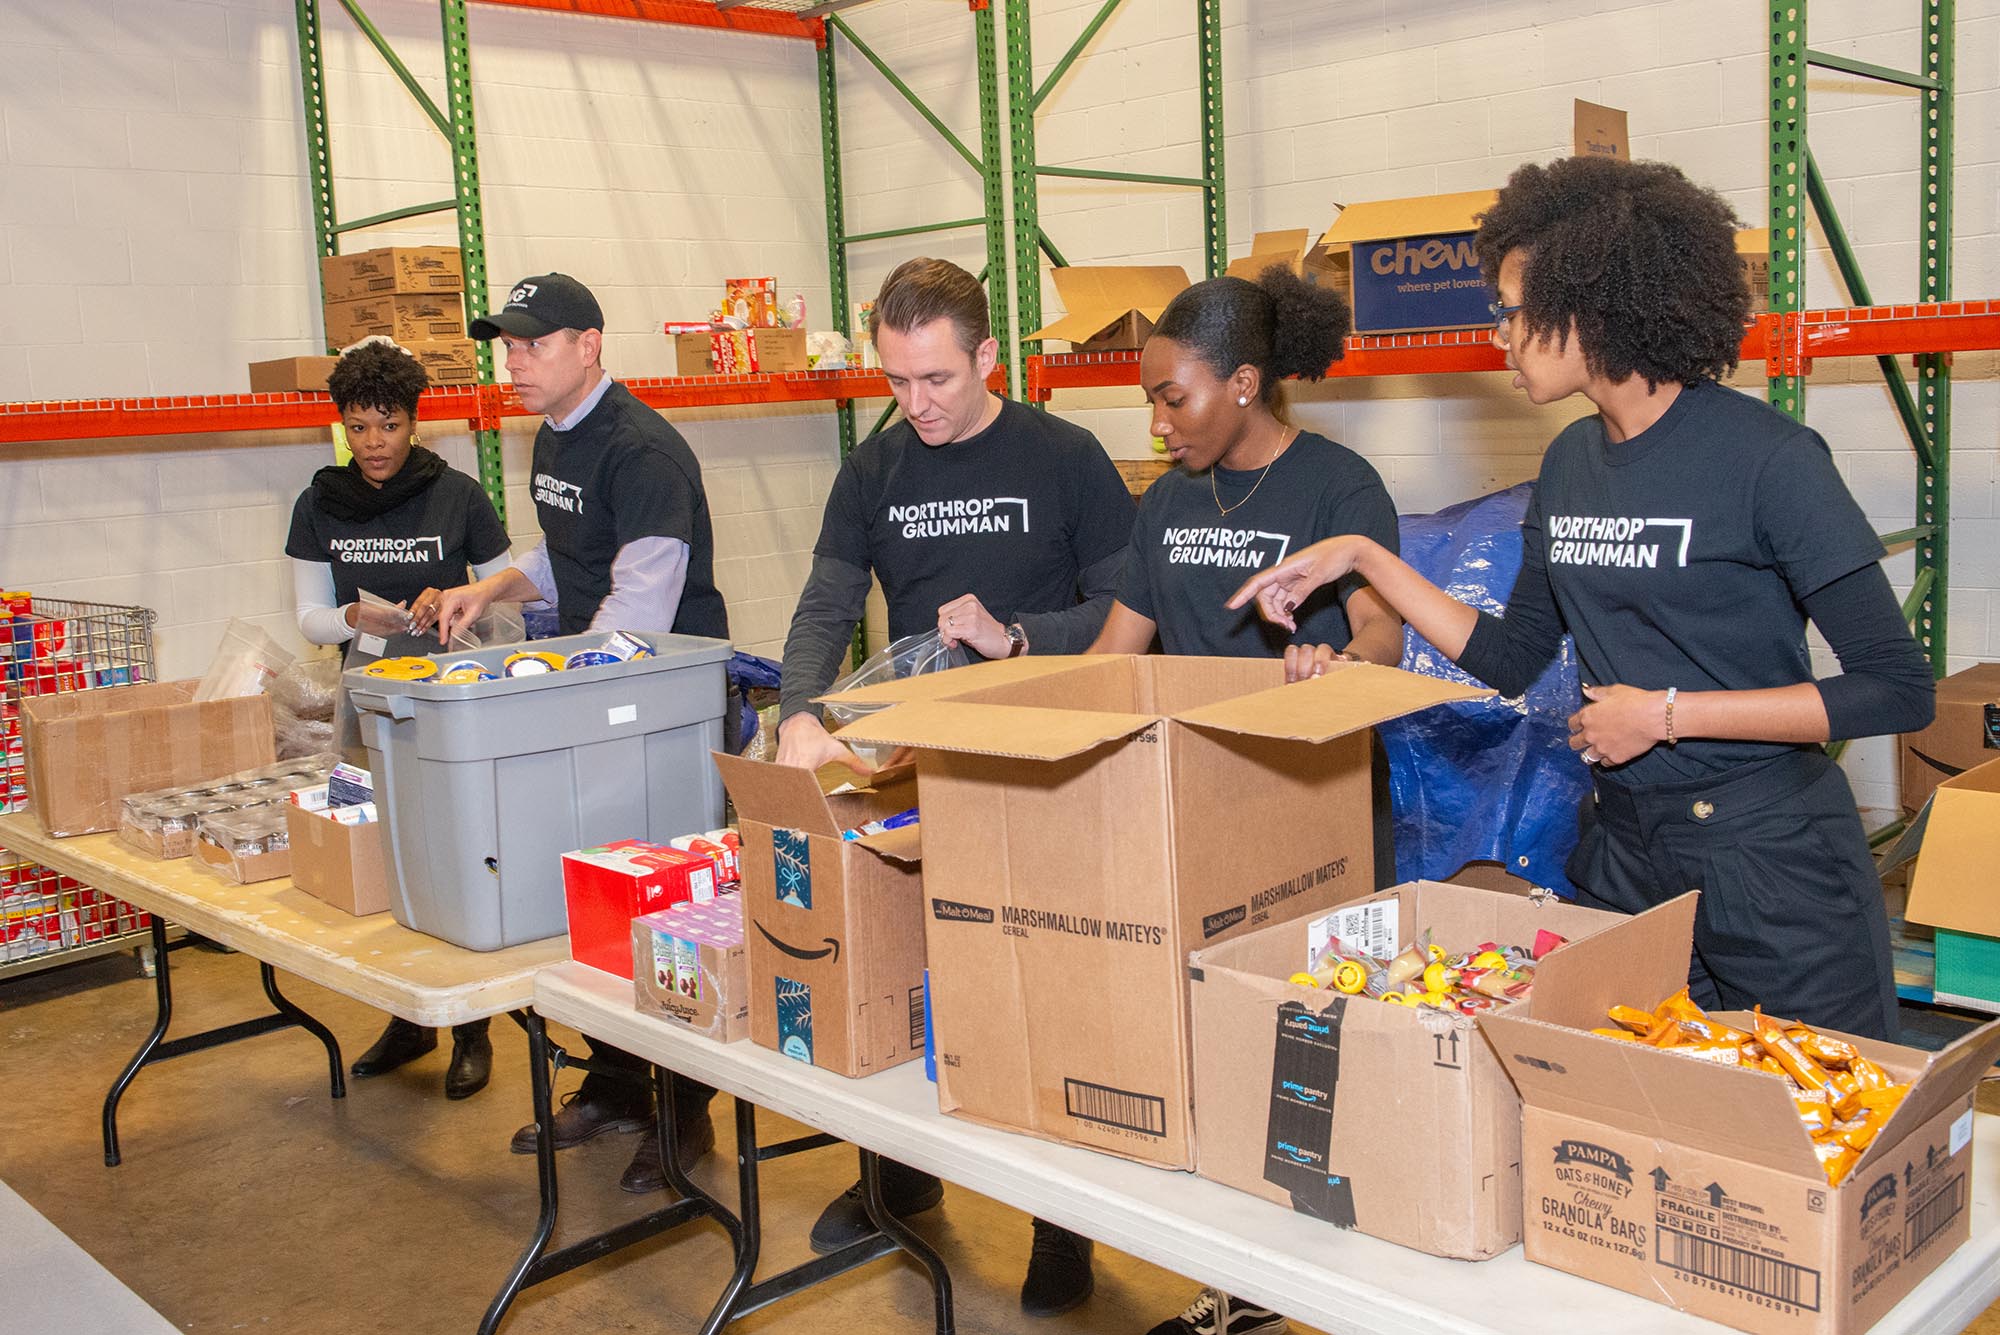 Several Northrop Grumman employee volunteers package food at a table